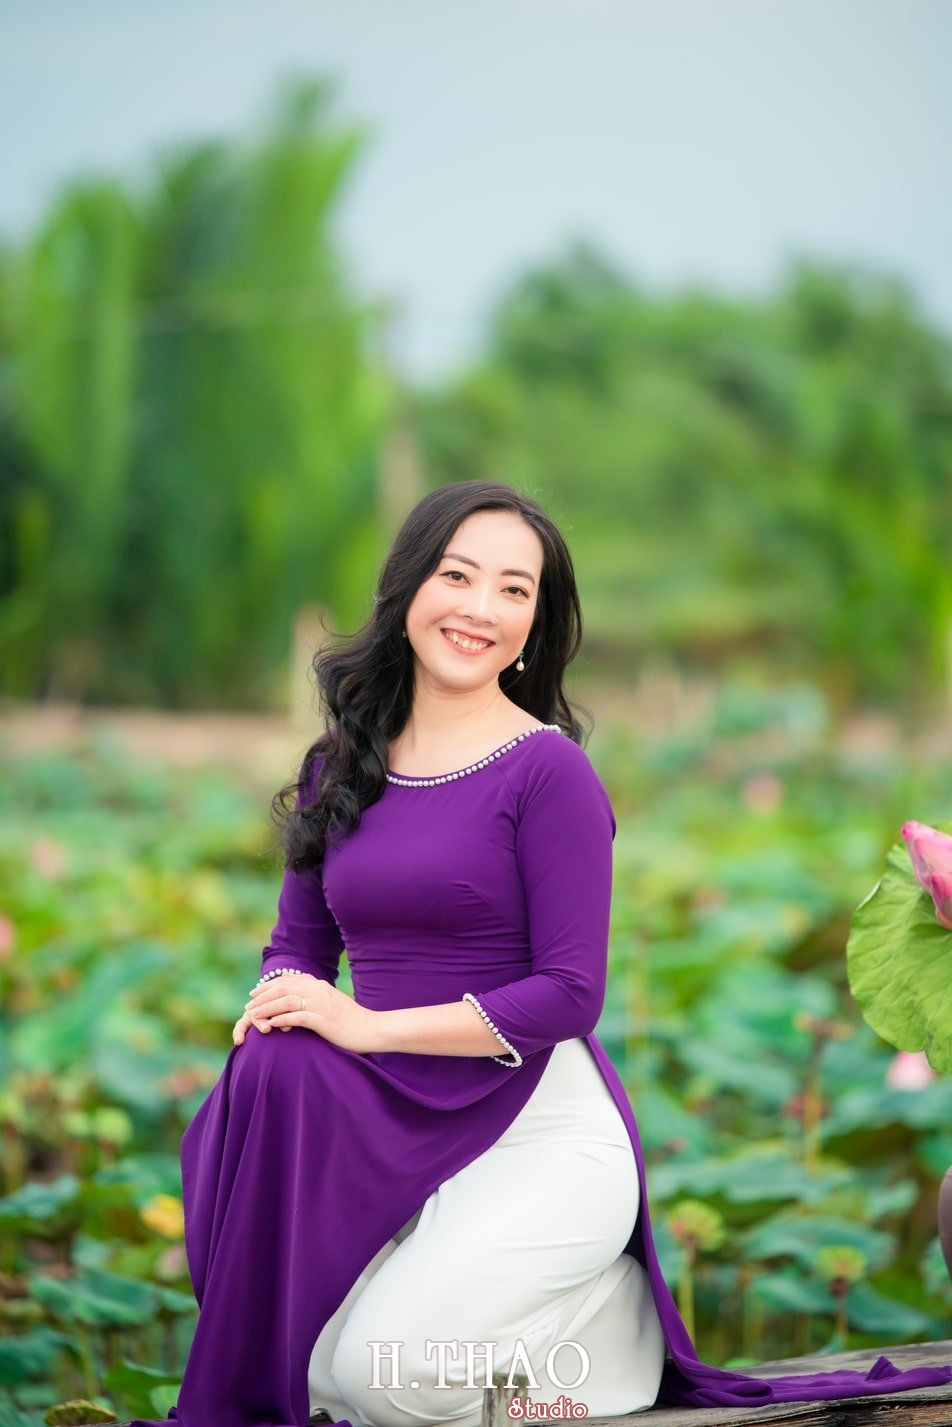 Anh Hoa sen tam da 10 - 49 cách tạo dáng chụp ảnh với áo dài tuyệt đẹp - HThao Studio